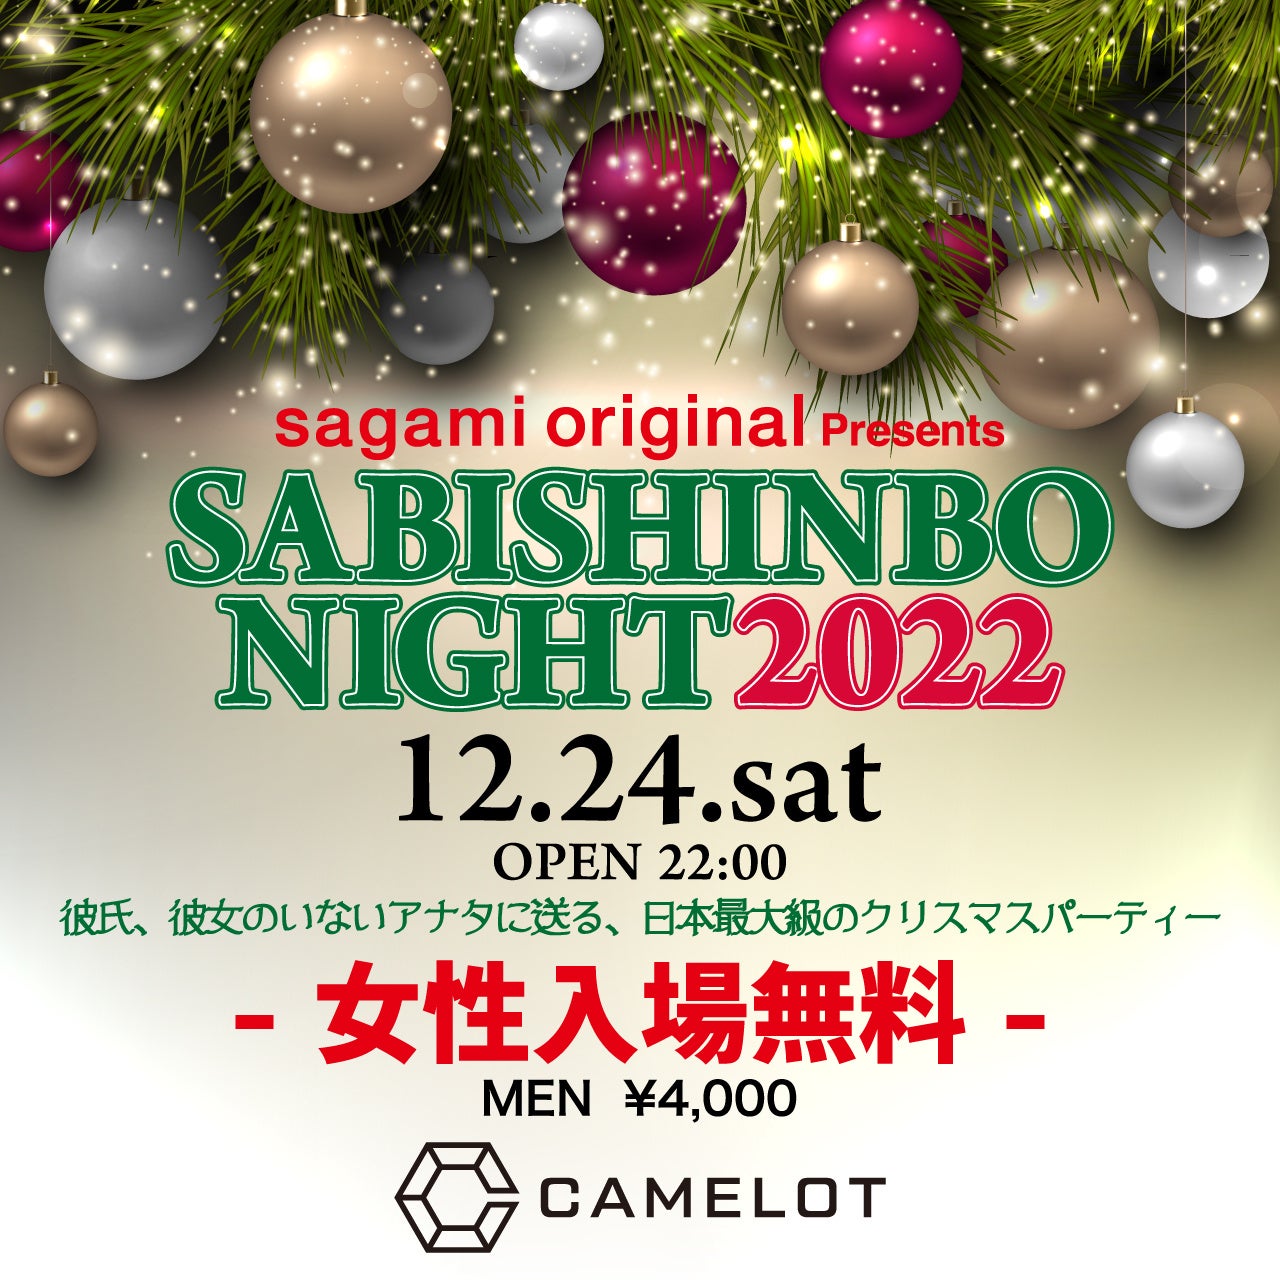 日本最大級のクリスマスパーティー、25年ぶりに渋谷で開催決定!!「SABISHINBO NIGHT2022」